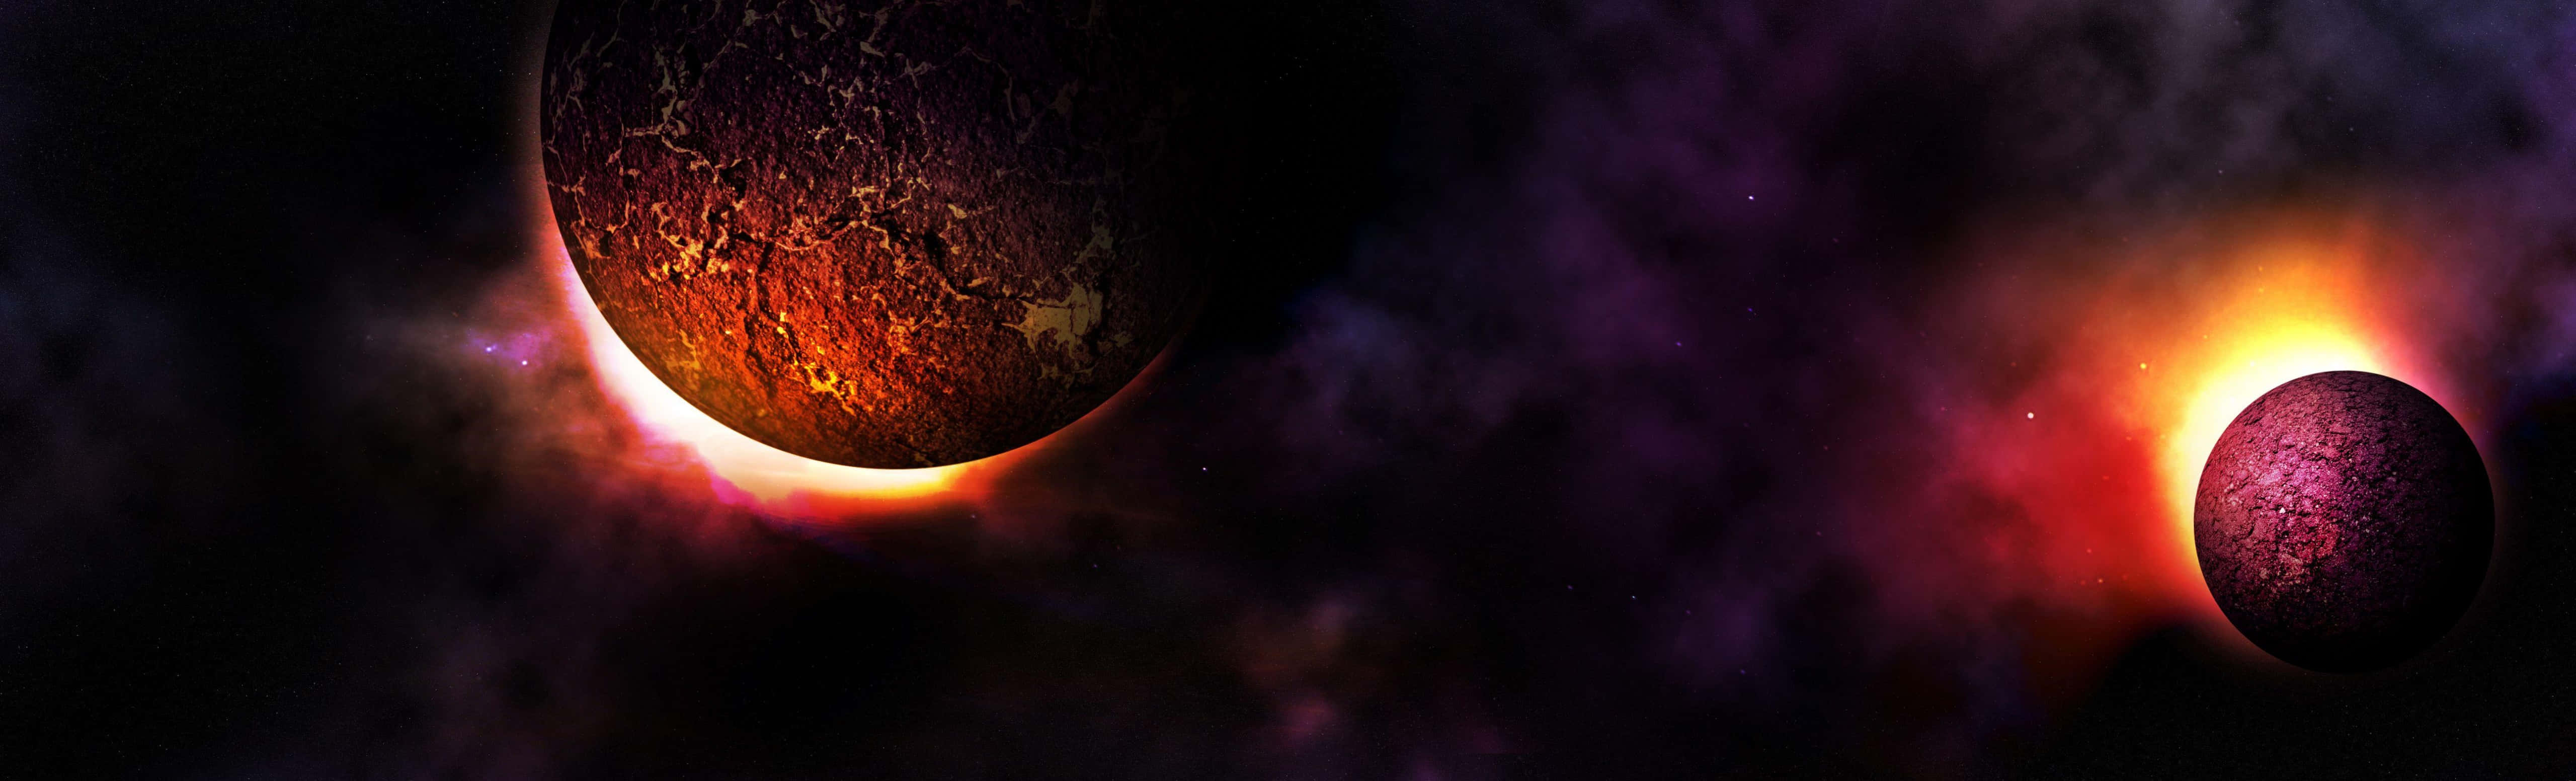 Zweiplaneten Im Weltraum Mit Hellem Licht. Wallpaper